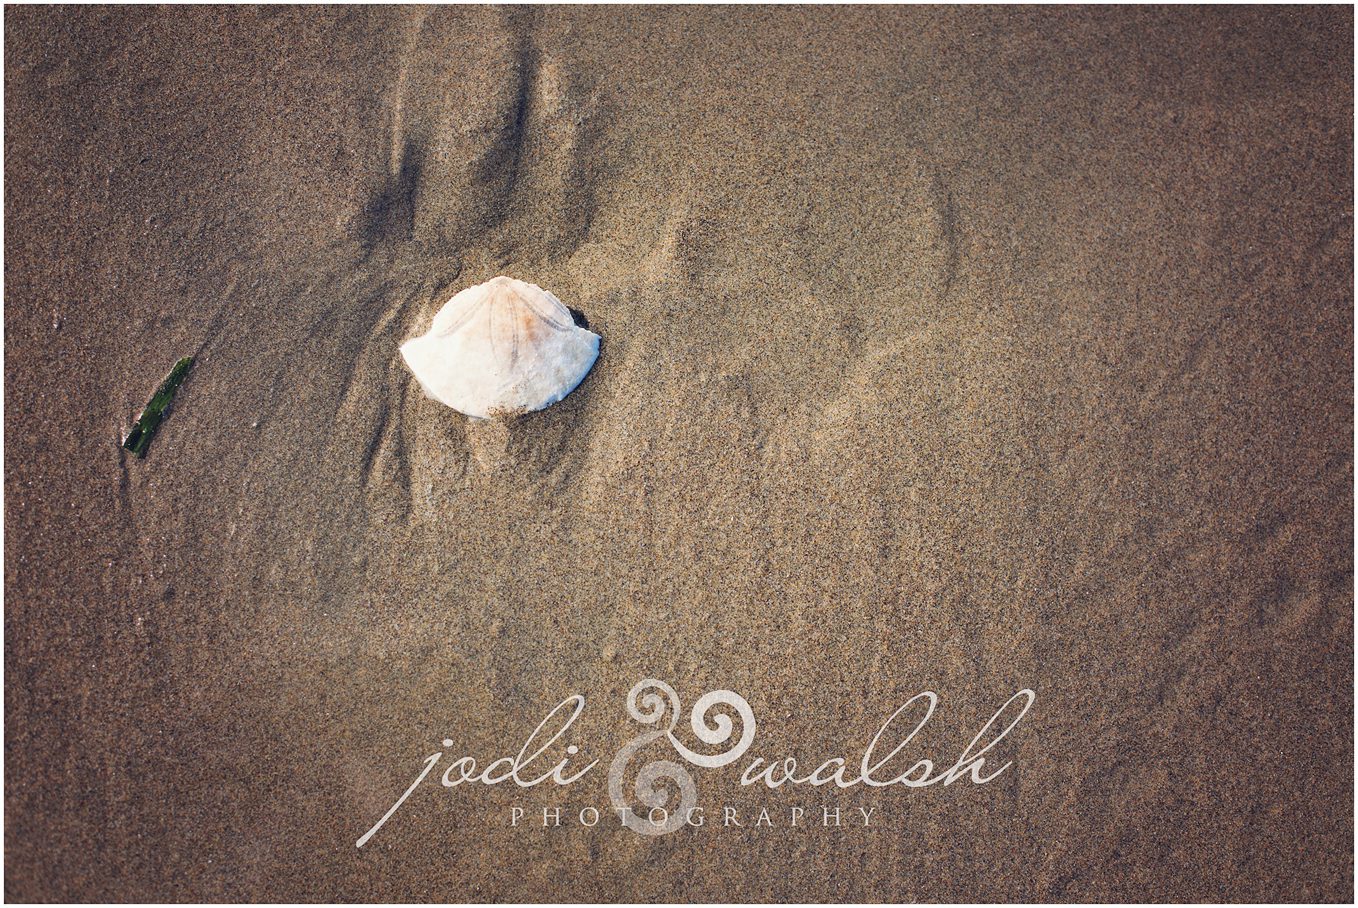 sand dollar on the beach, Cannon Beach Oregon